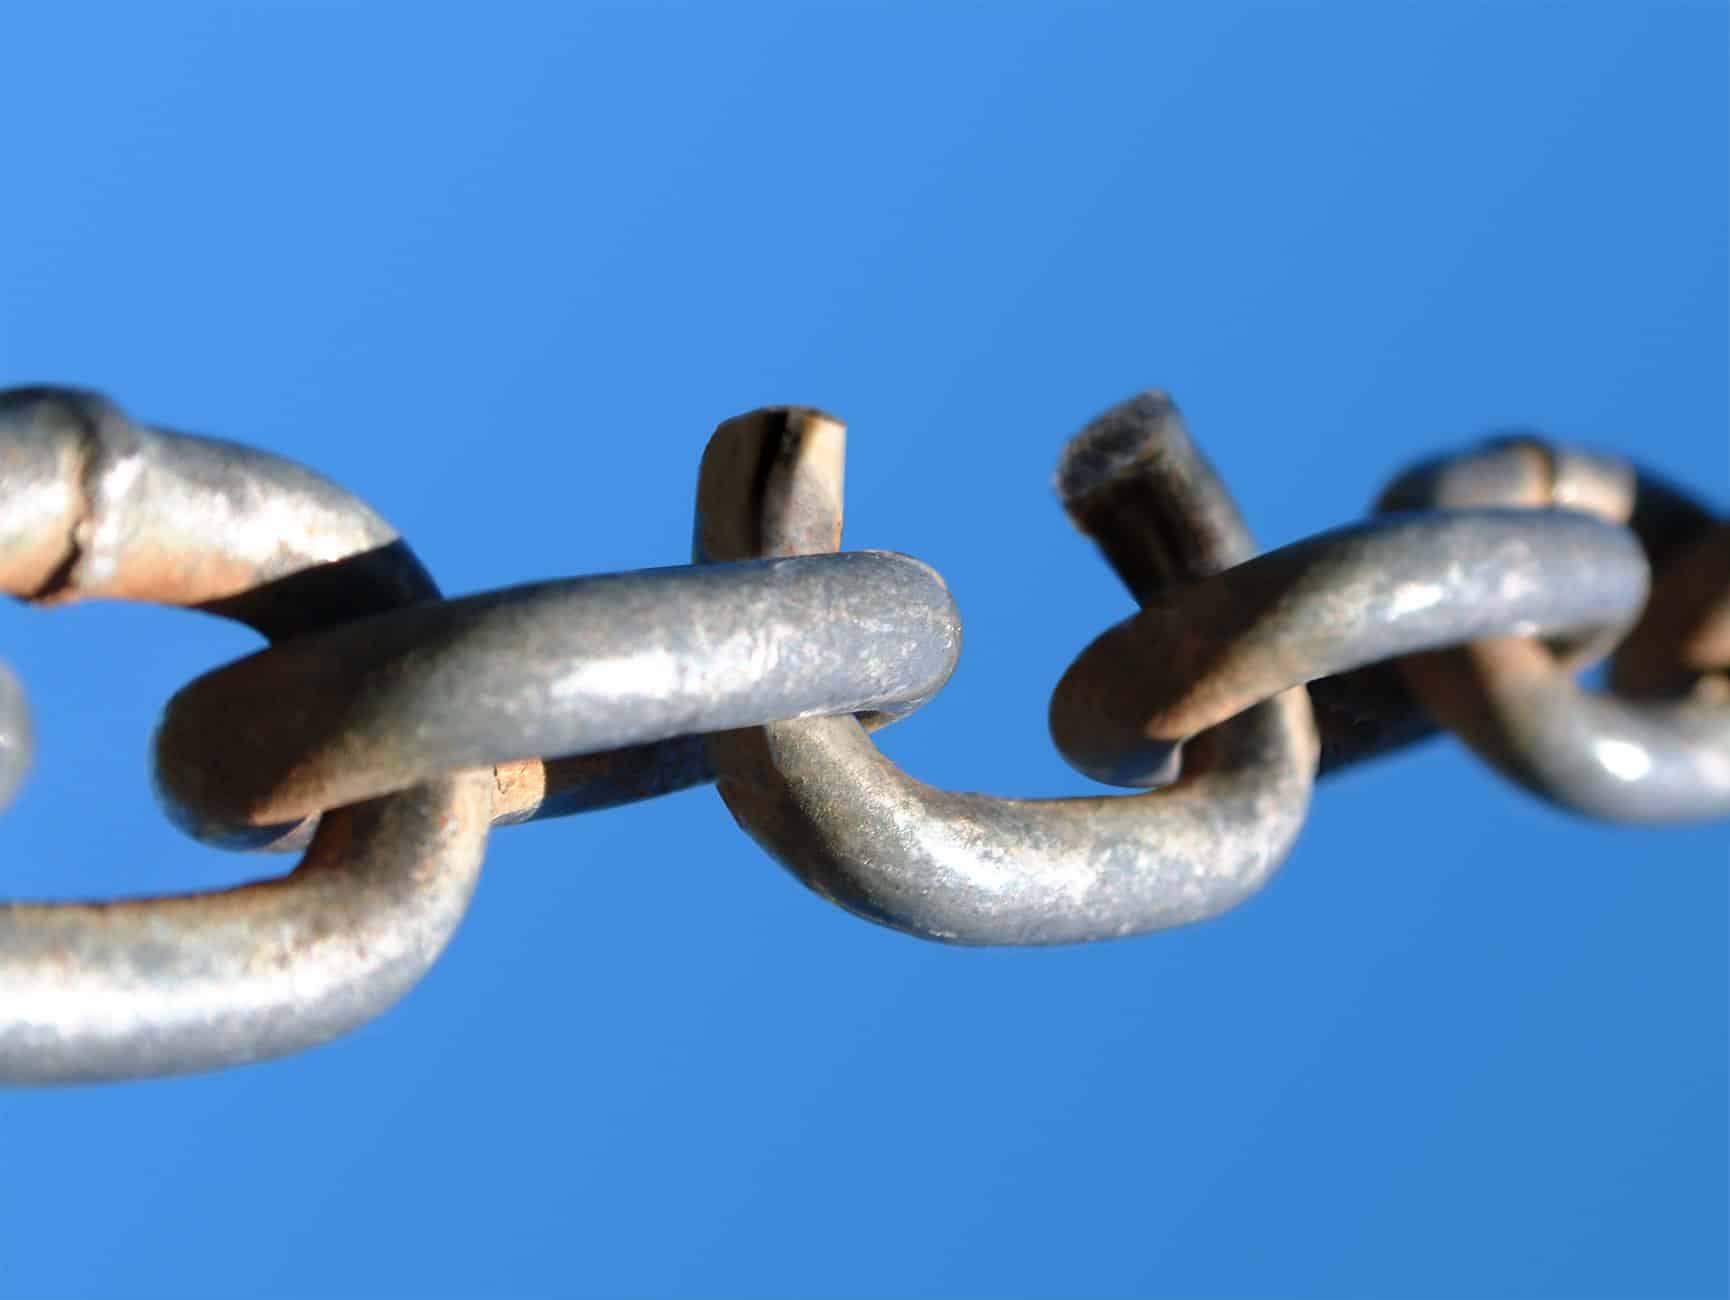 Chain link splitting open